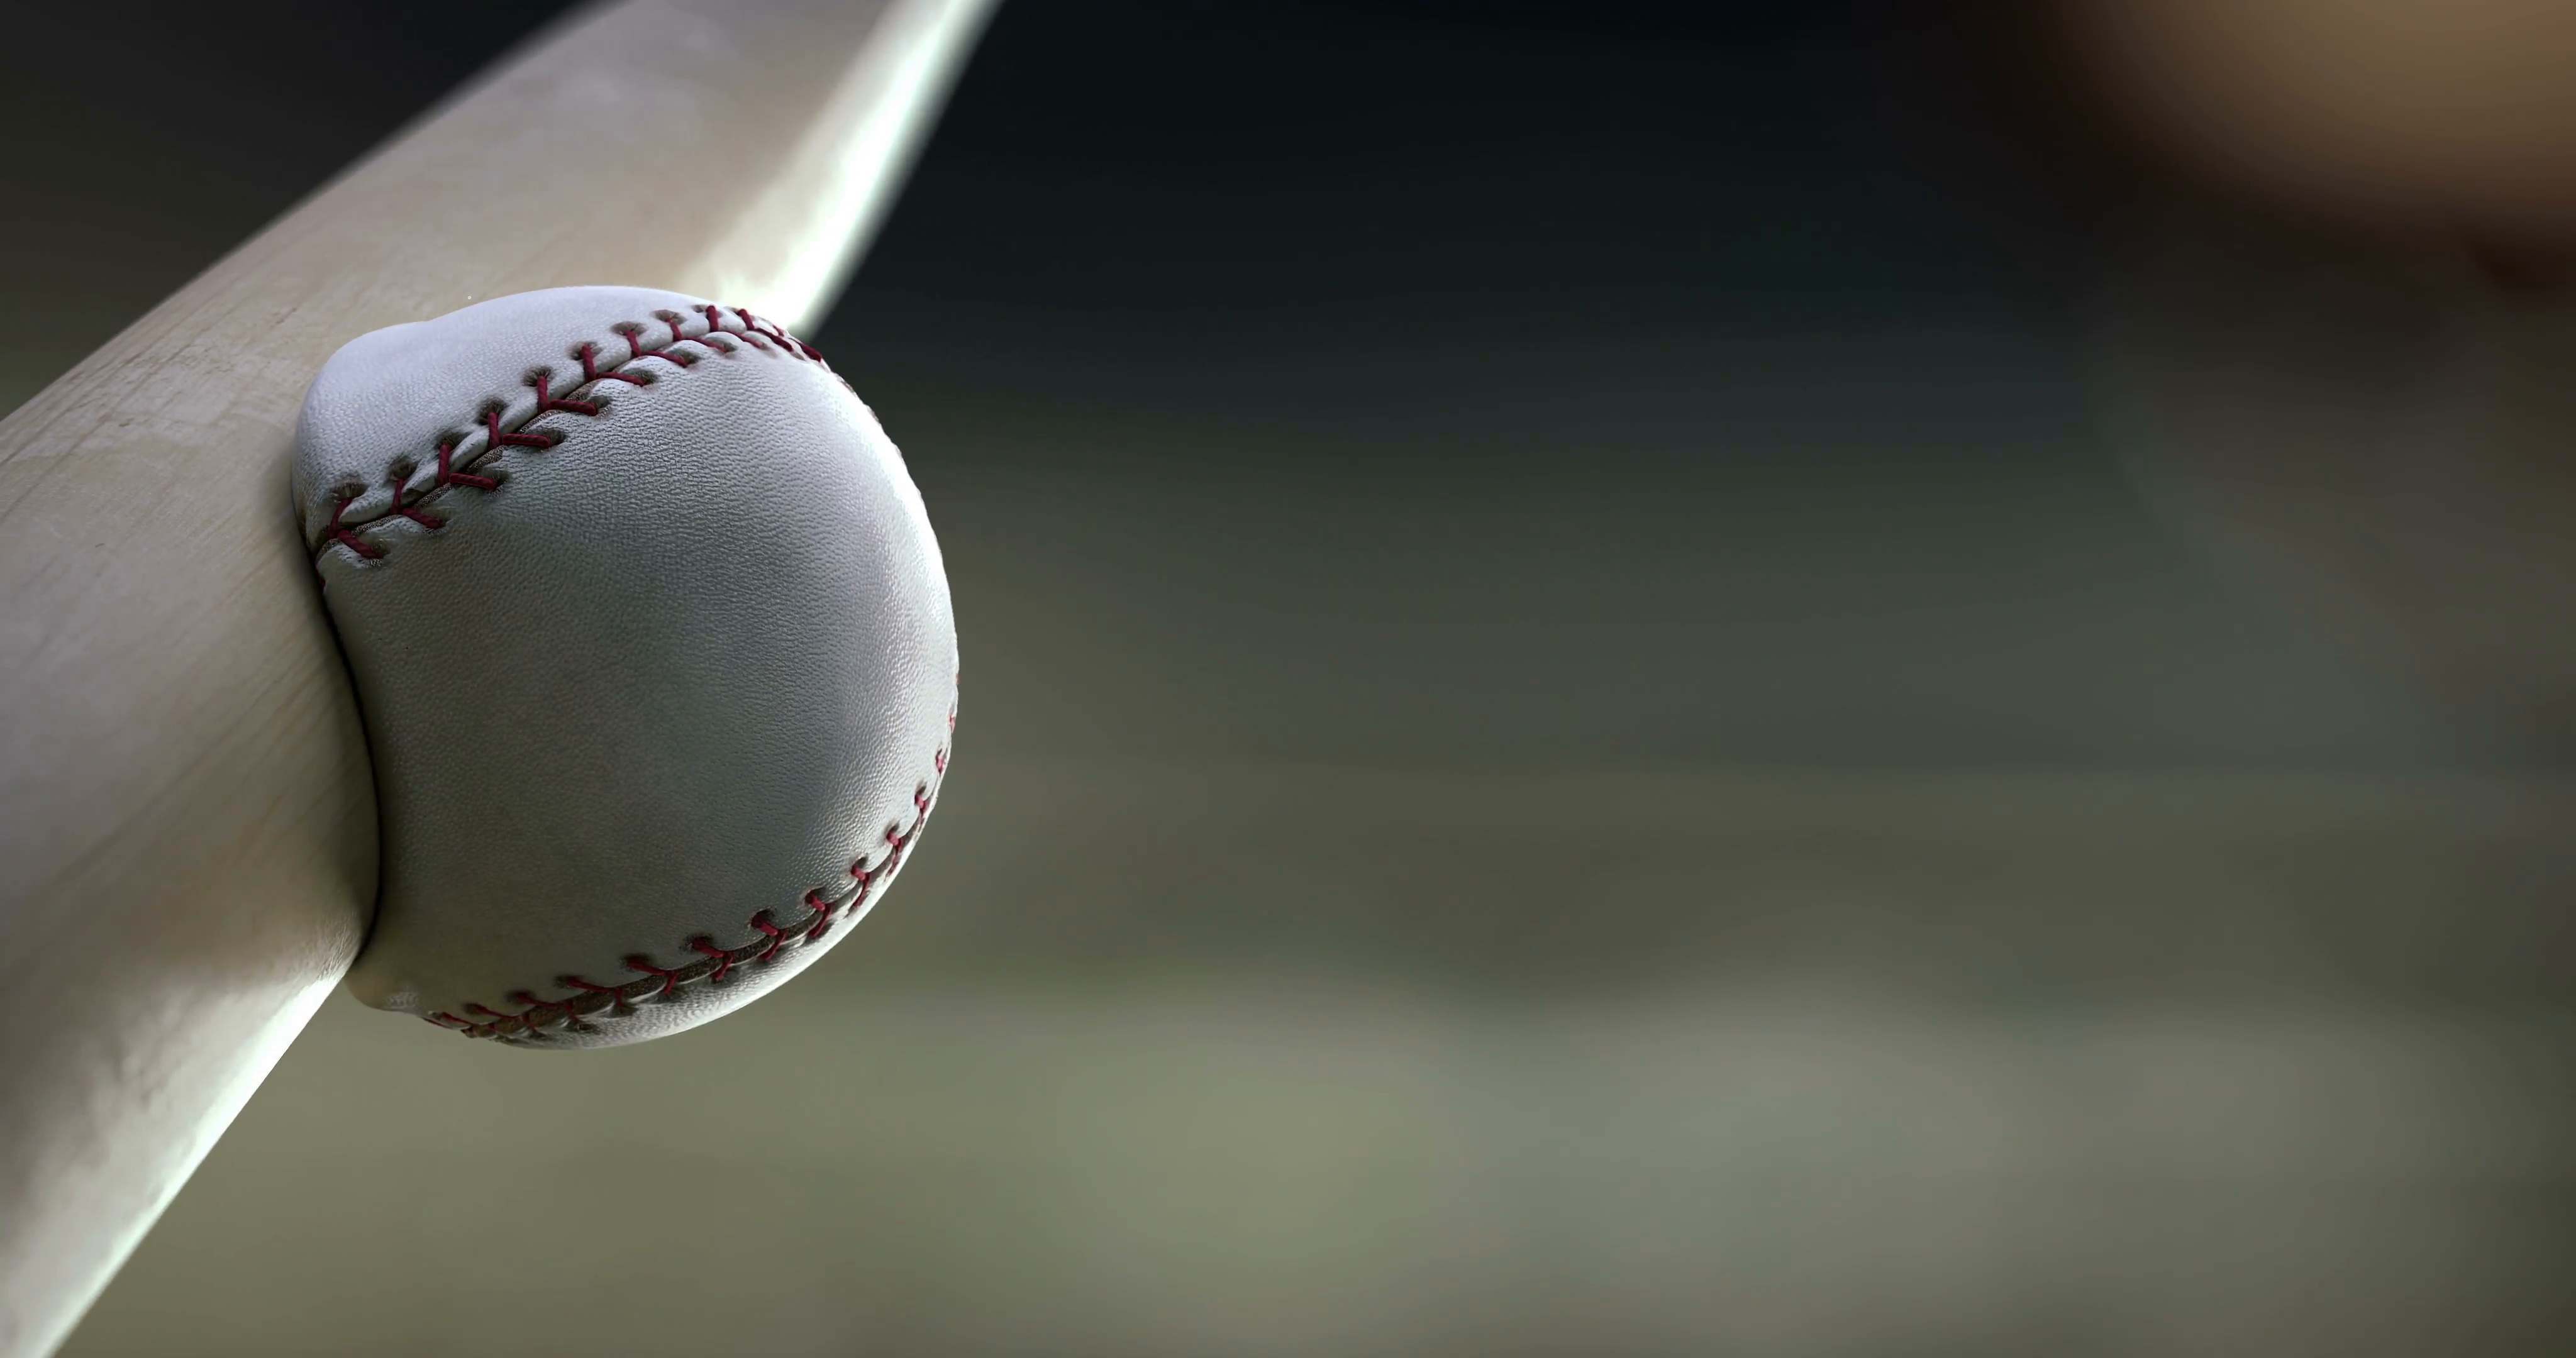 Βίντεο: Απόκρουση σε αγώνα μπέιζμπολ έστειλε ένα κοριτσάκι στο νοσοκομείο